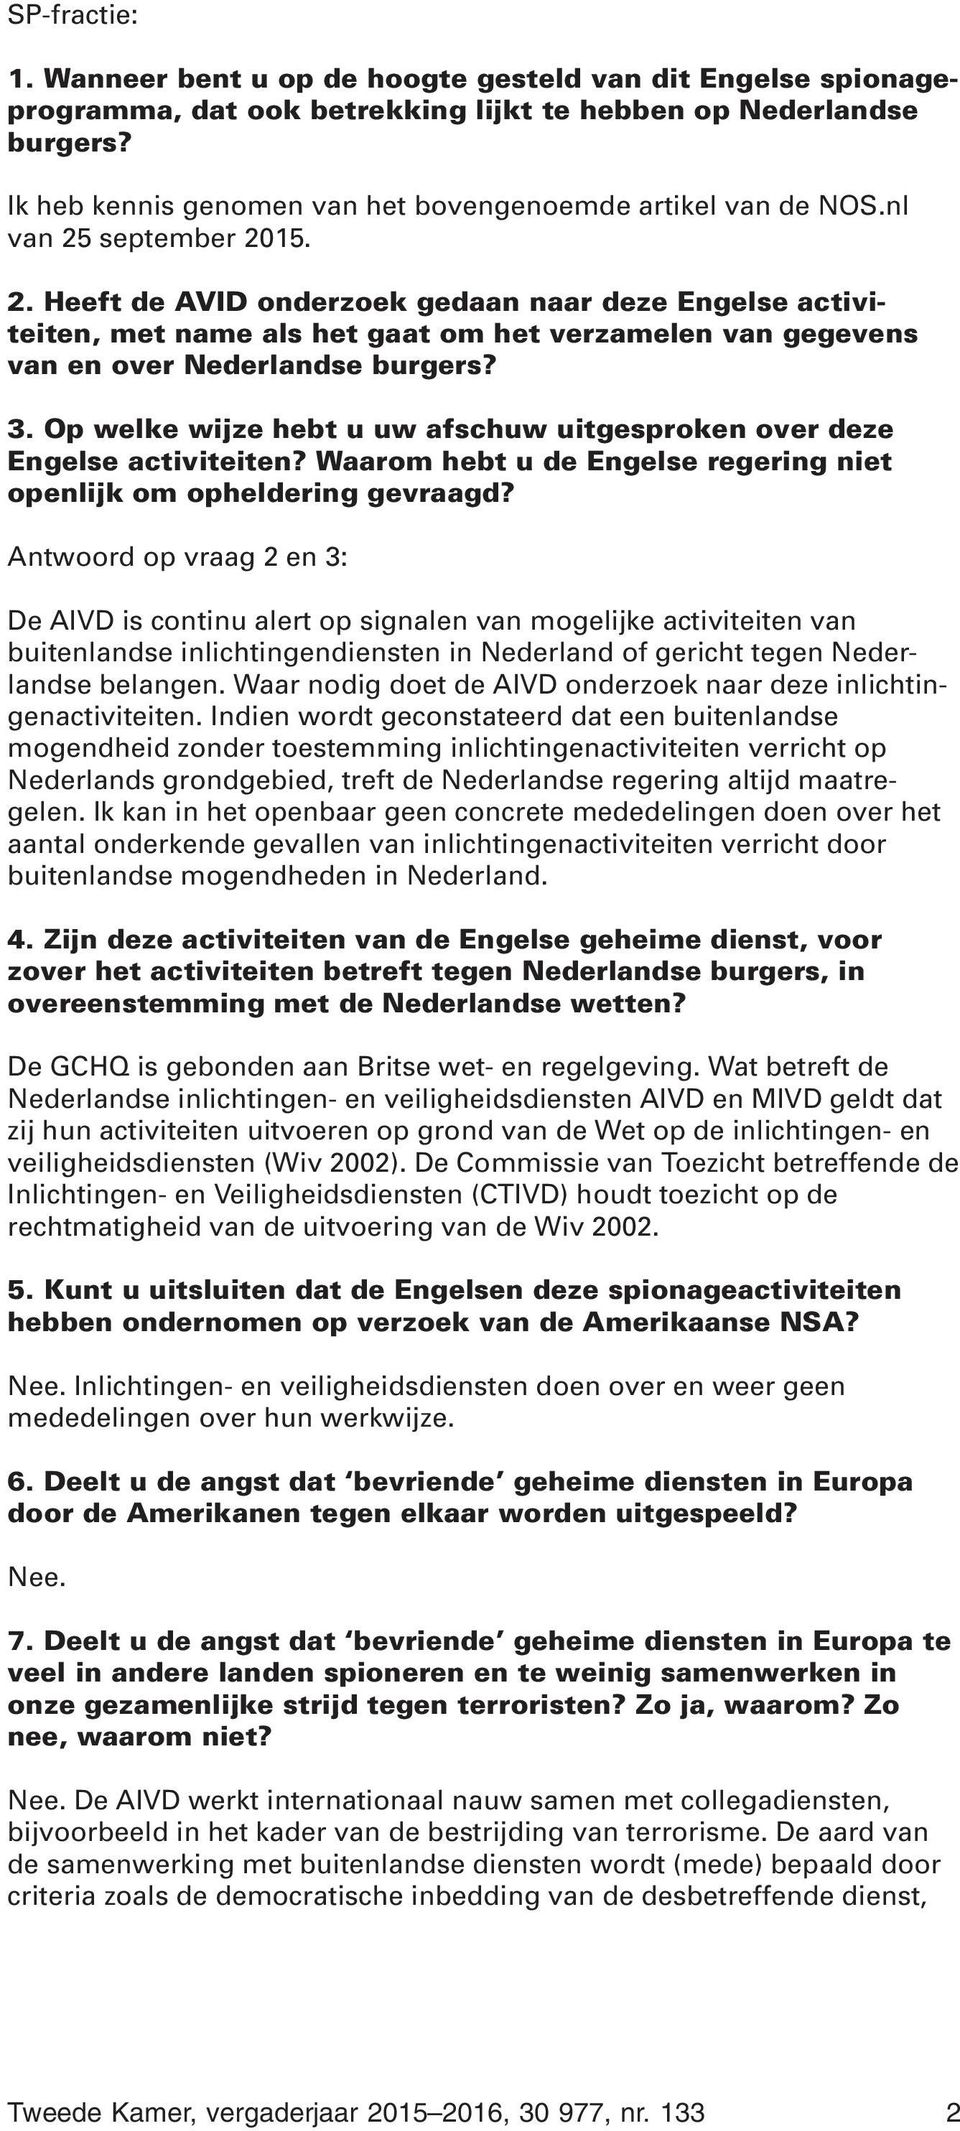 september 2015. 2. Heeft de AVID onderzoek gedaan naar deze Engelse activiteiten, met name als het gaat om het verzamelen van gegevens van en over Nederlandse burgers? 3.